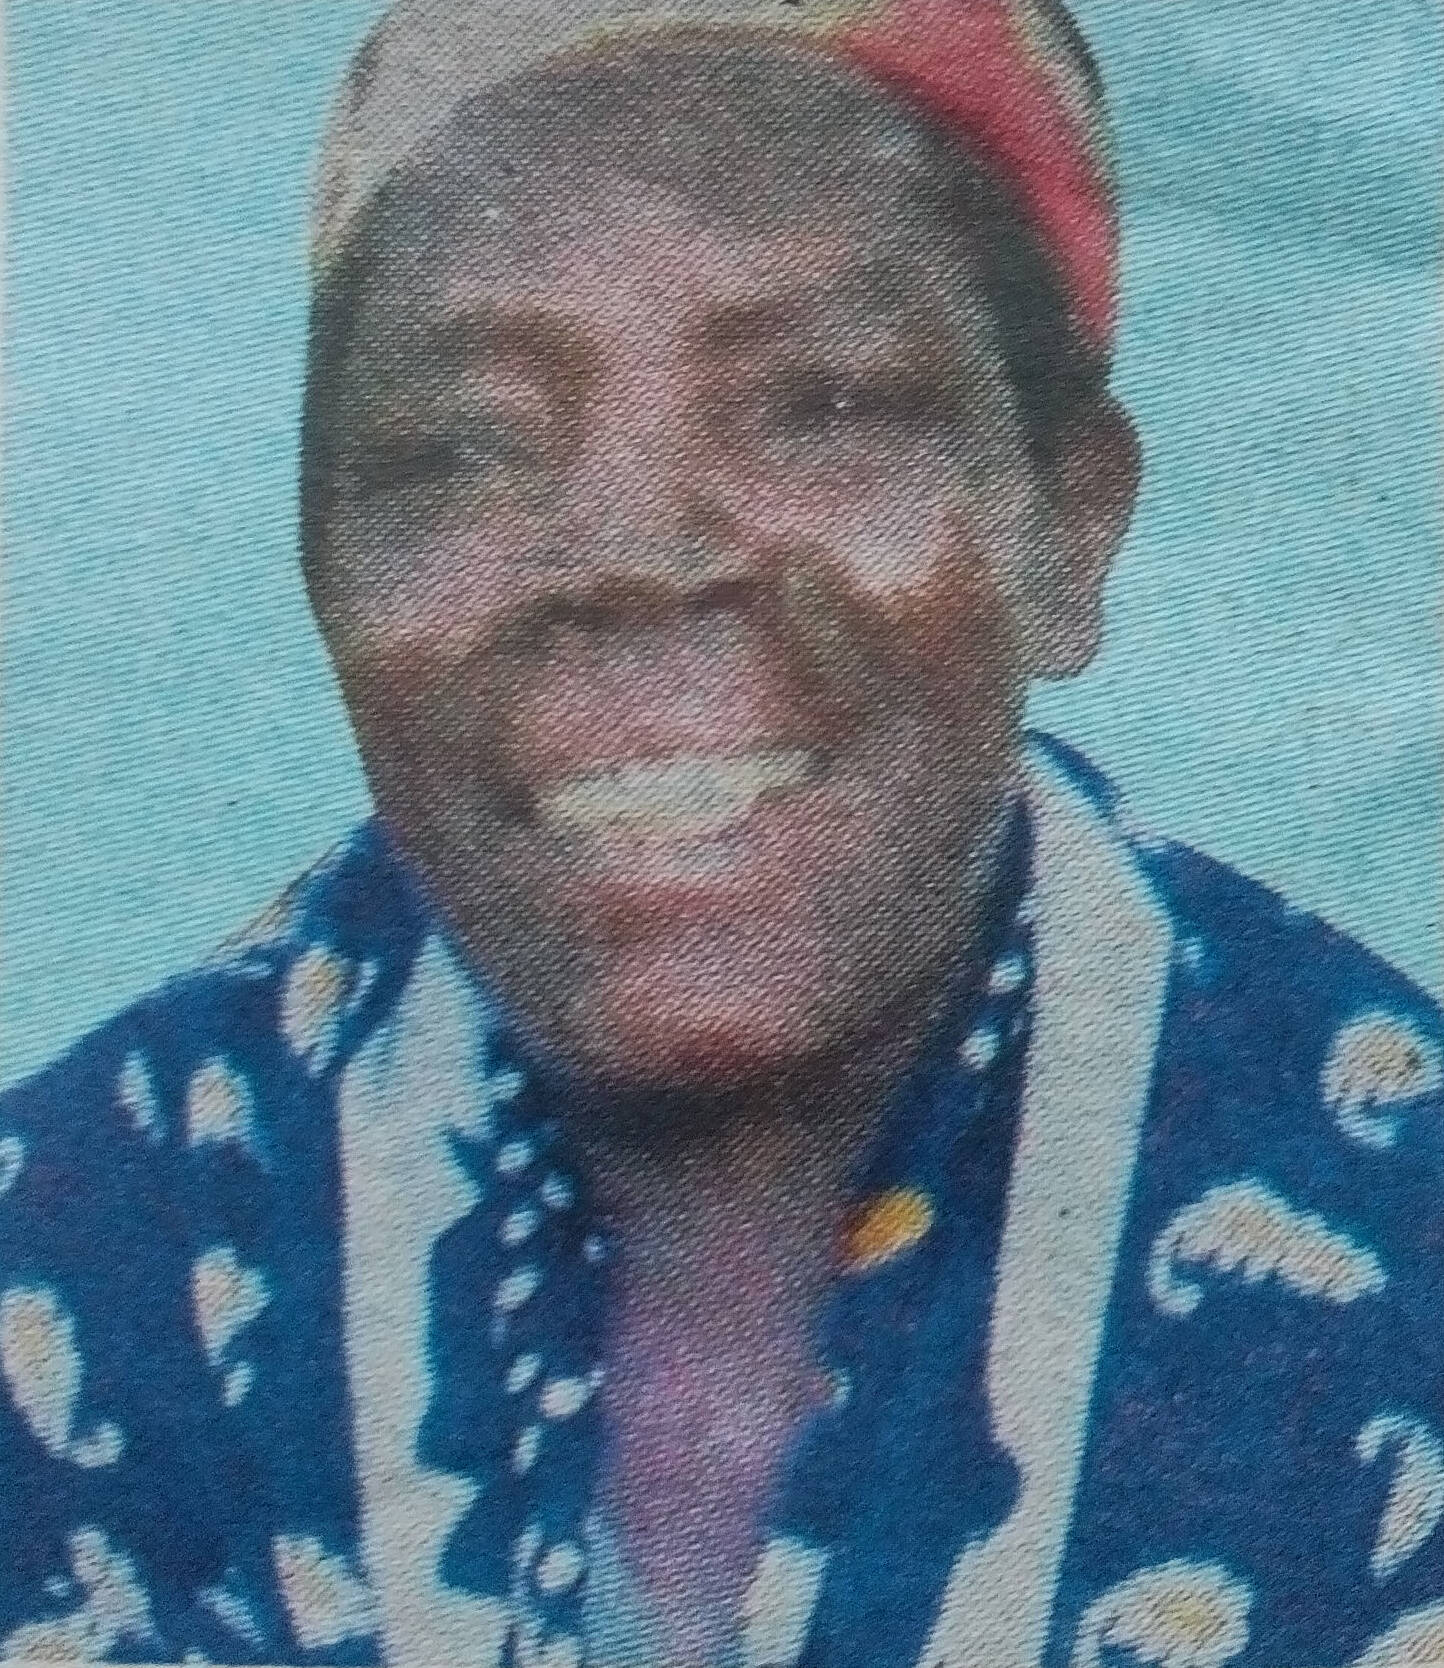 Obituary Image of Florendina Jemeli Yego1952 - 2017